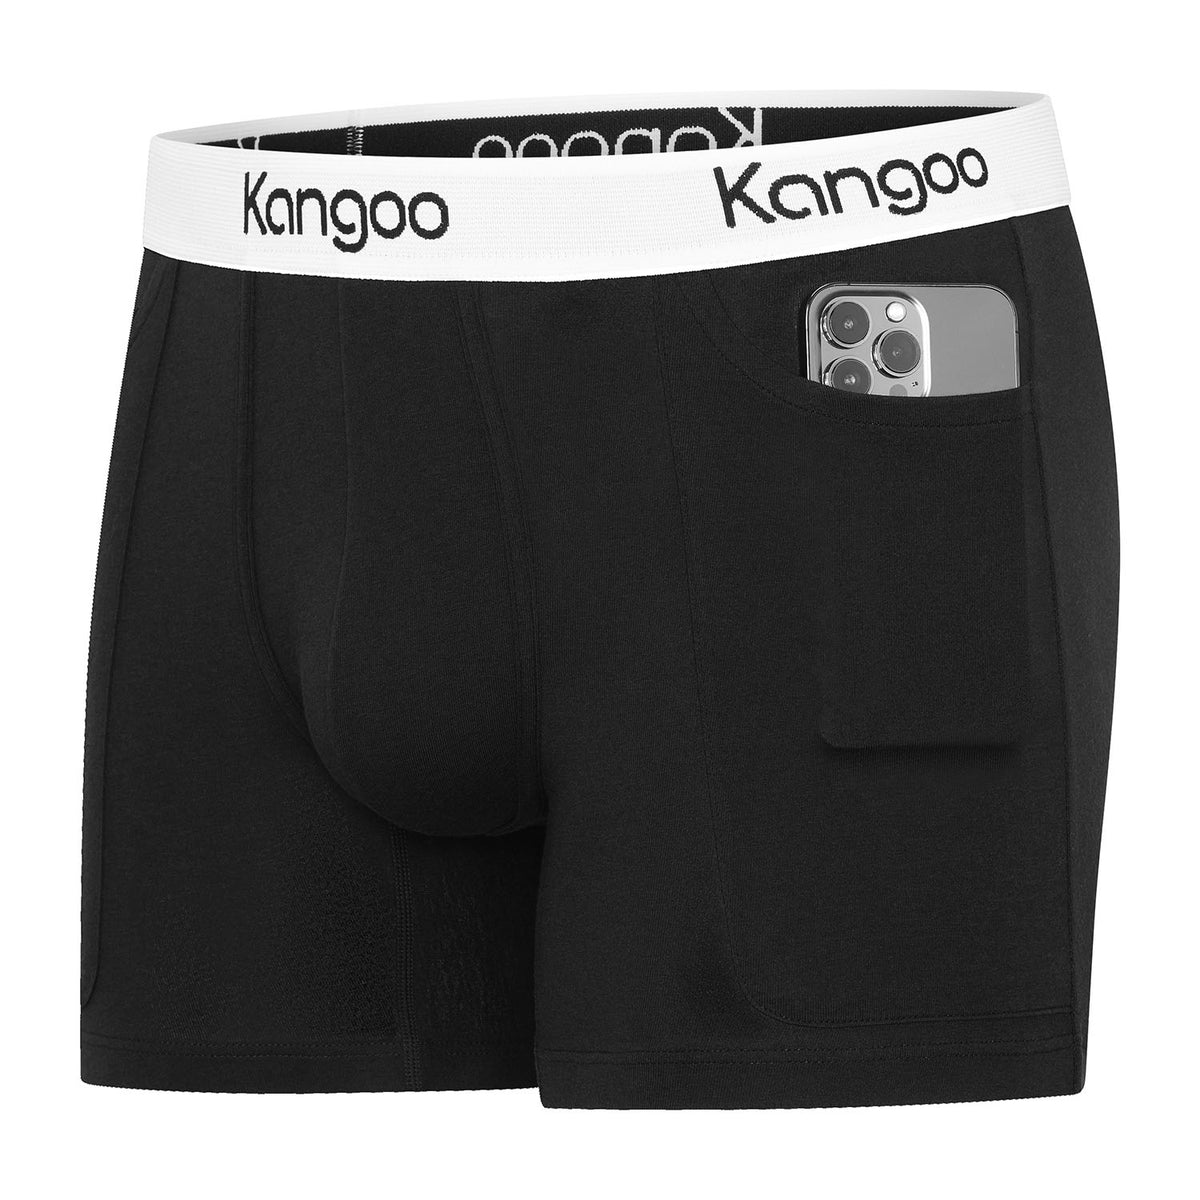 Kangoo | Black & White